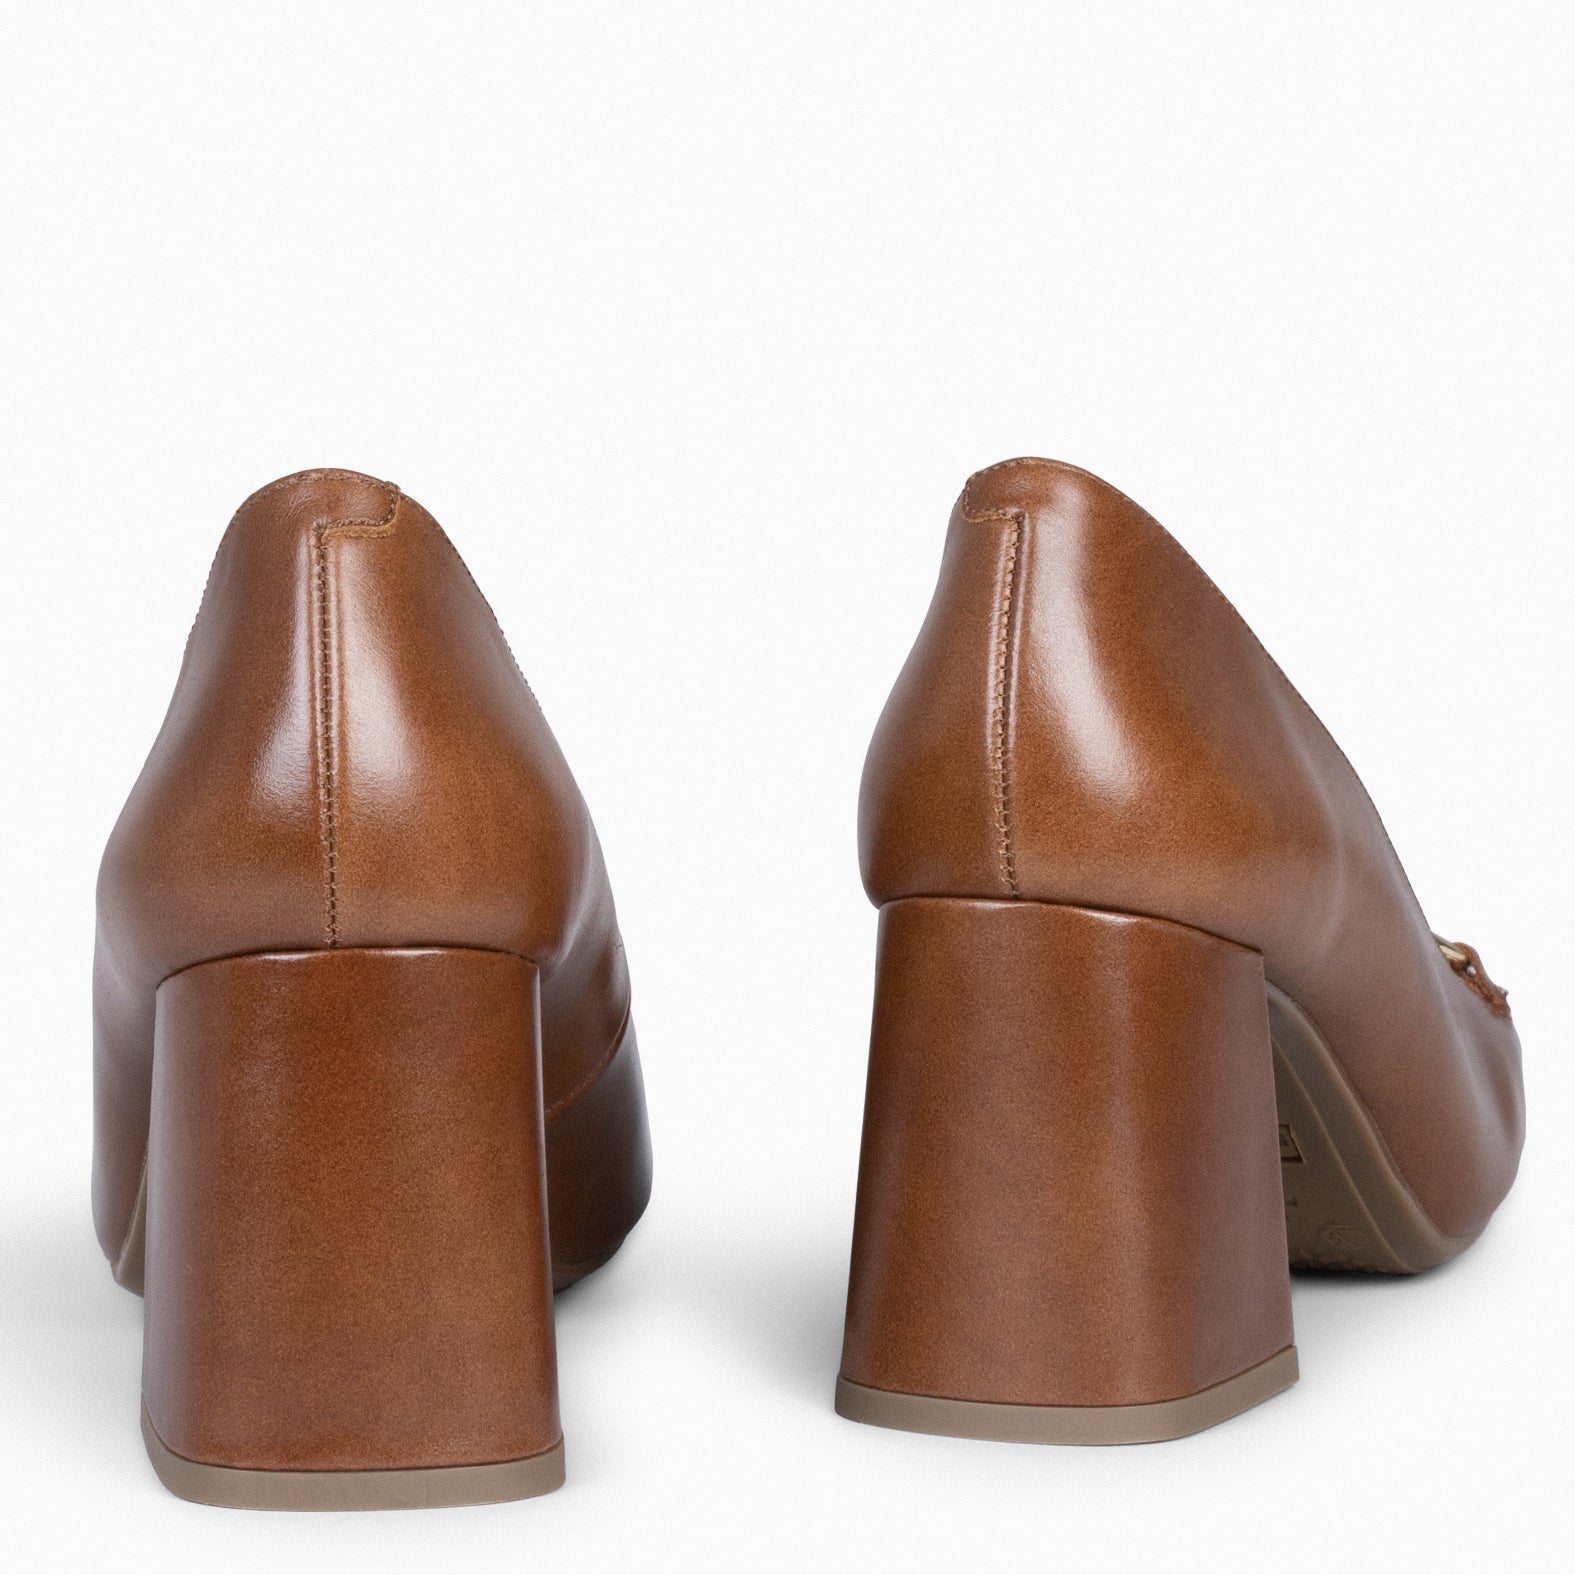 MÍA – Chaussures à talon bloc CAMEL